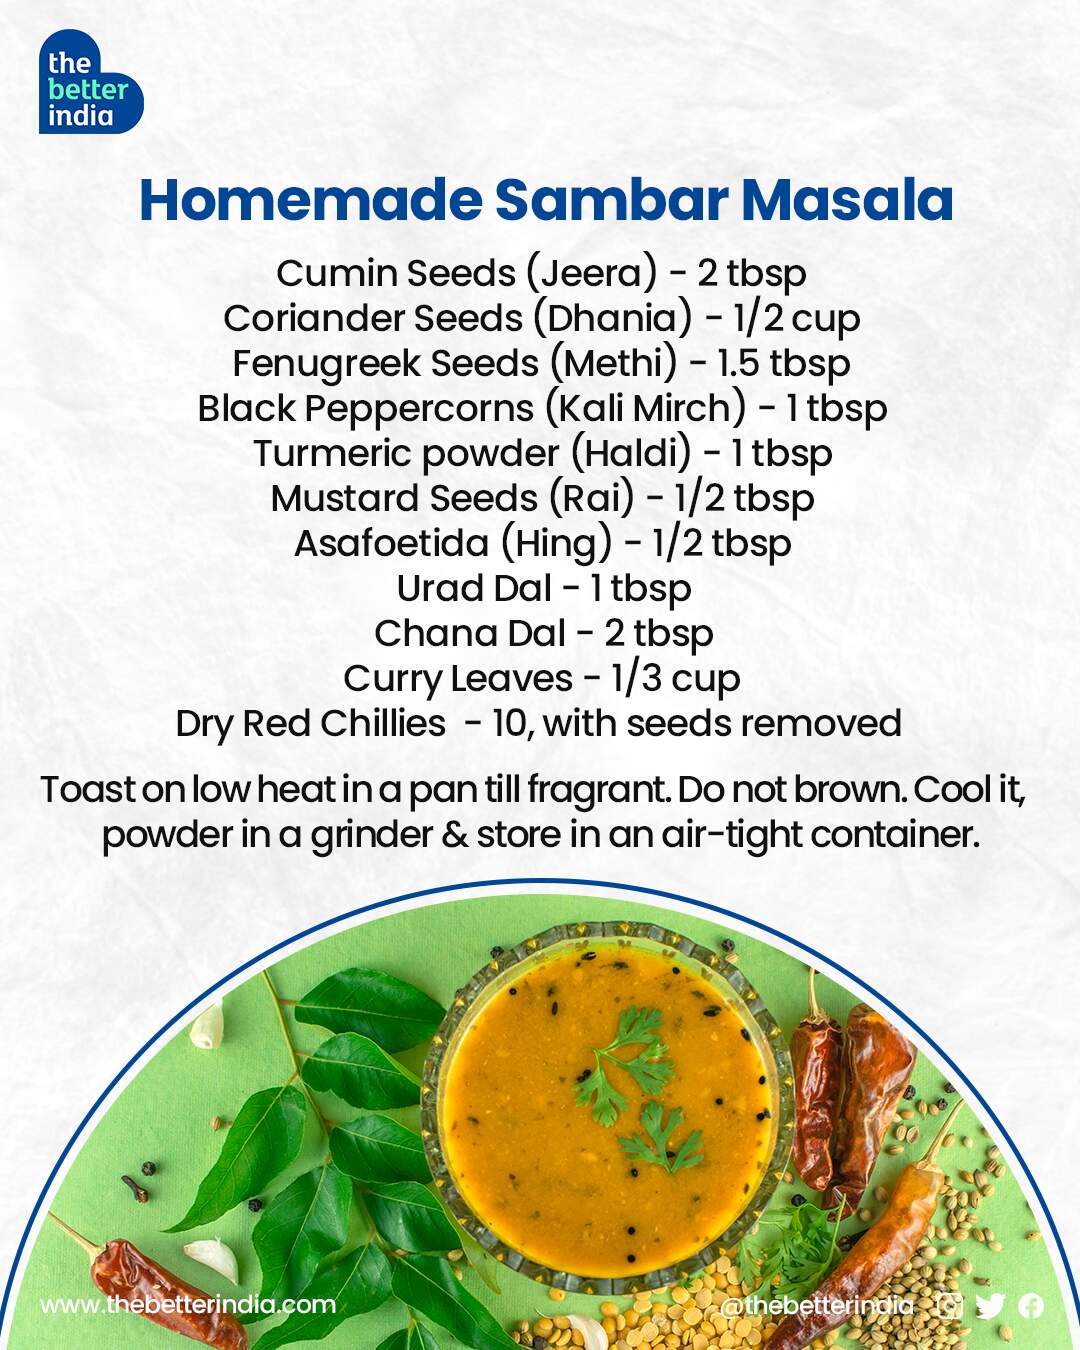  Homemade sambar masala recipe